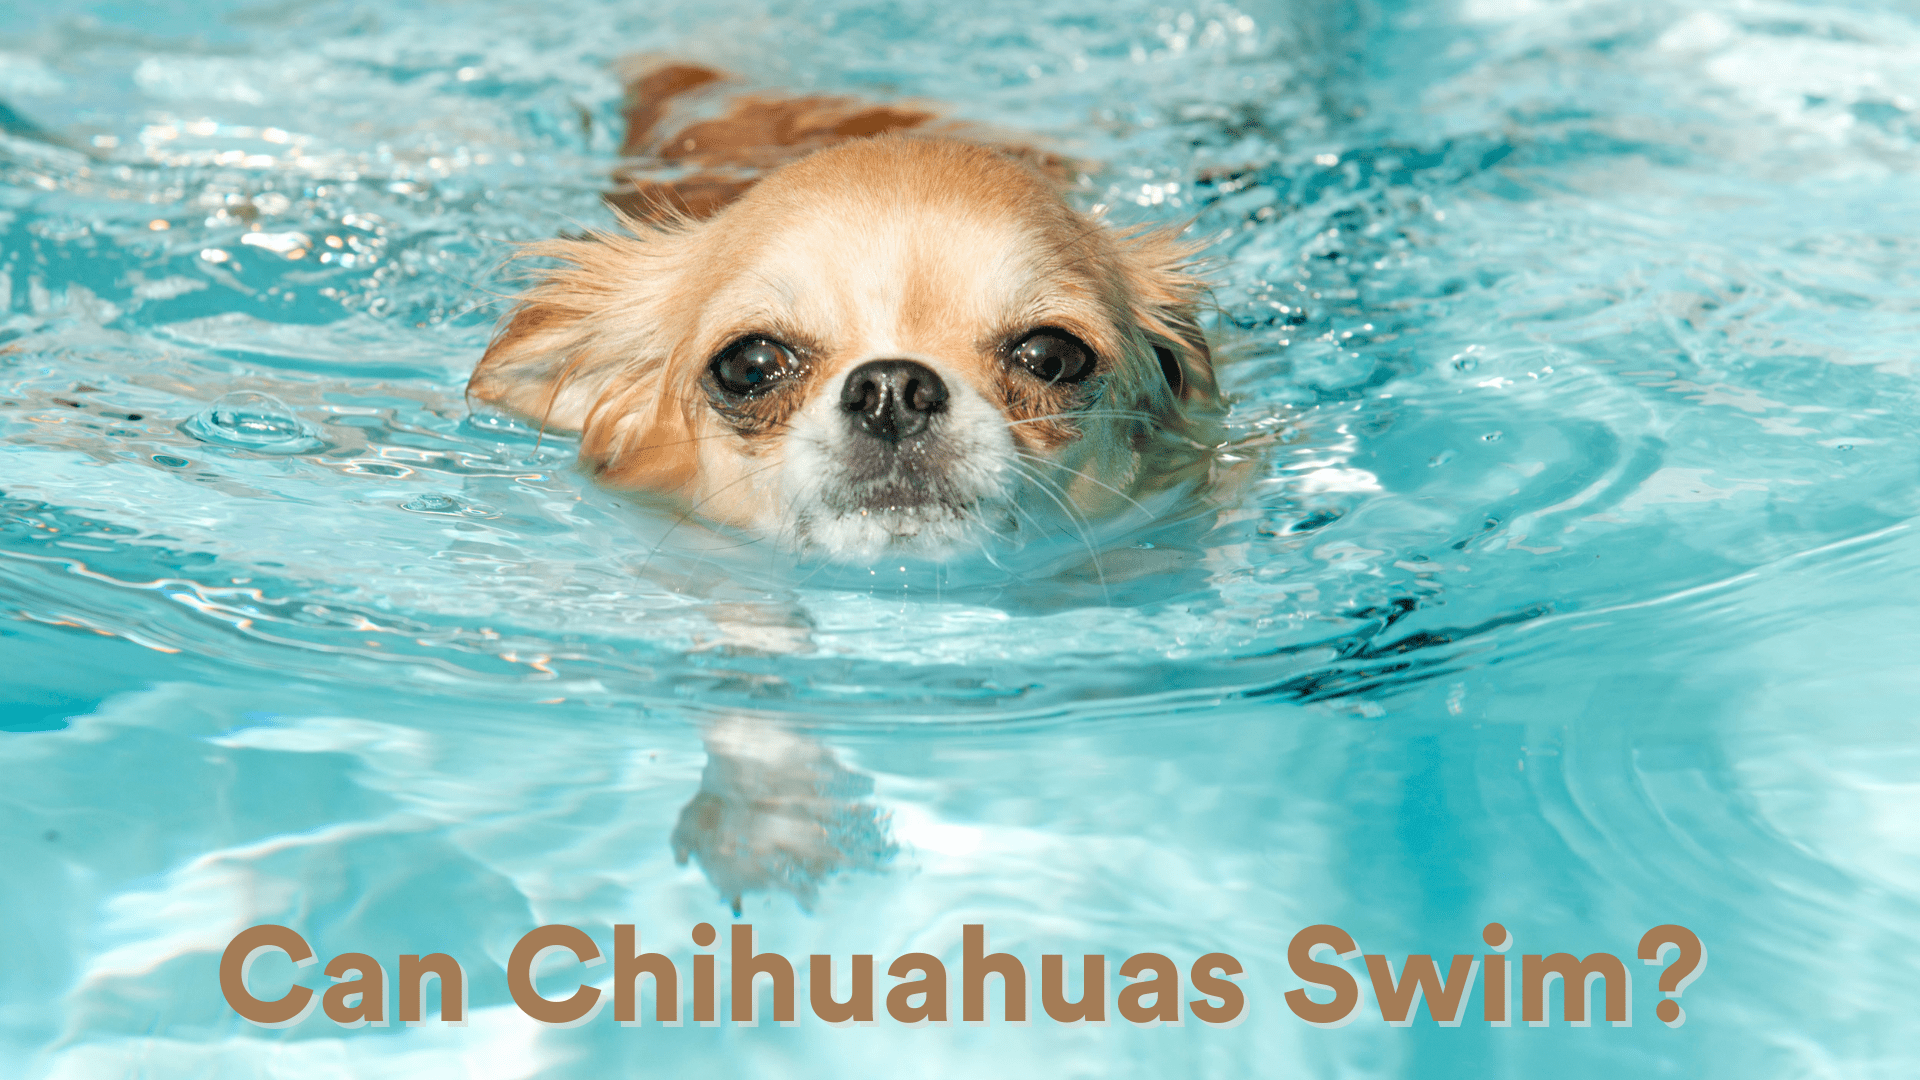 Can Chihuahuas Swim?